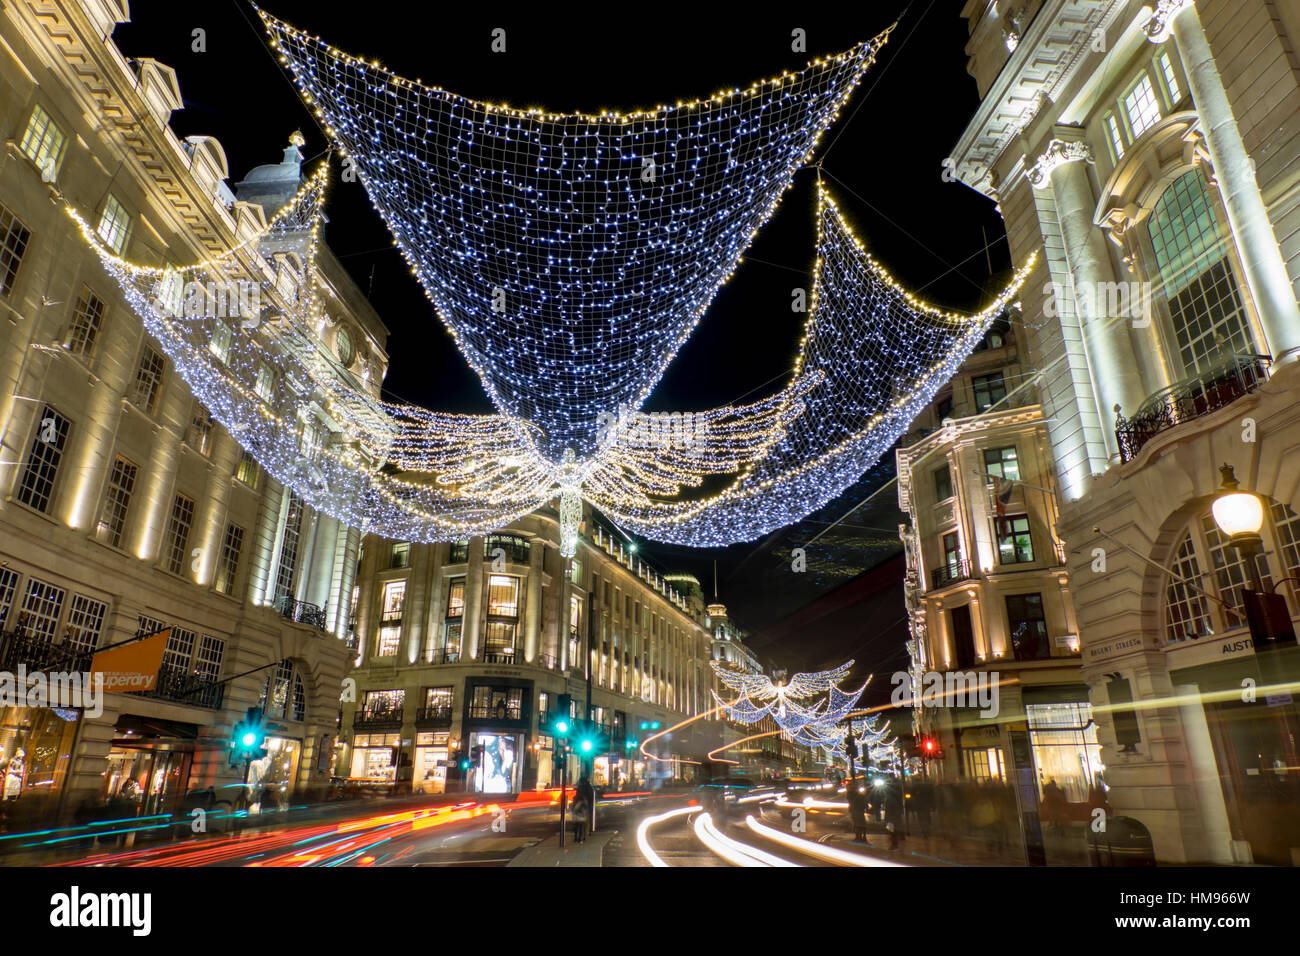 Regent Street lumières de Noël en 2016, Londres, Angleterre, Royaume-Uni Banque D'Images